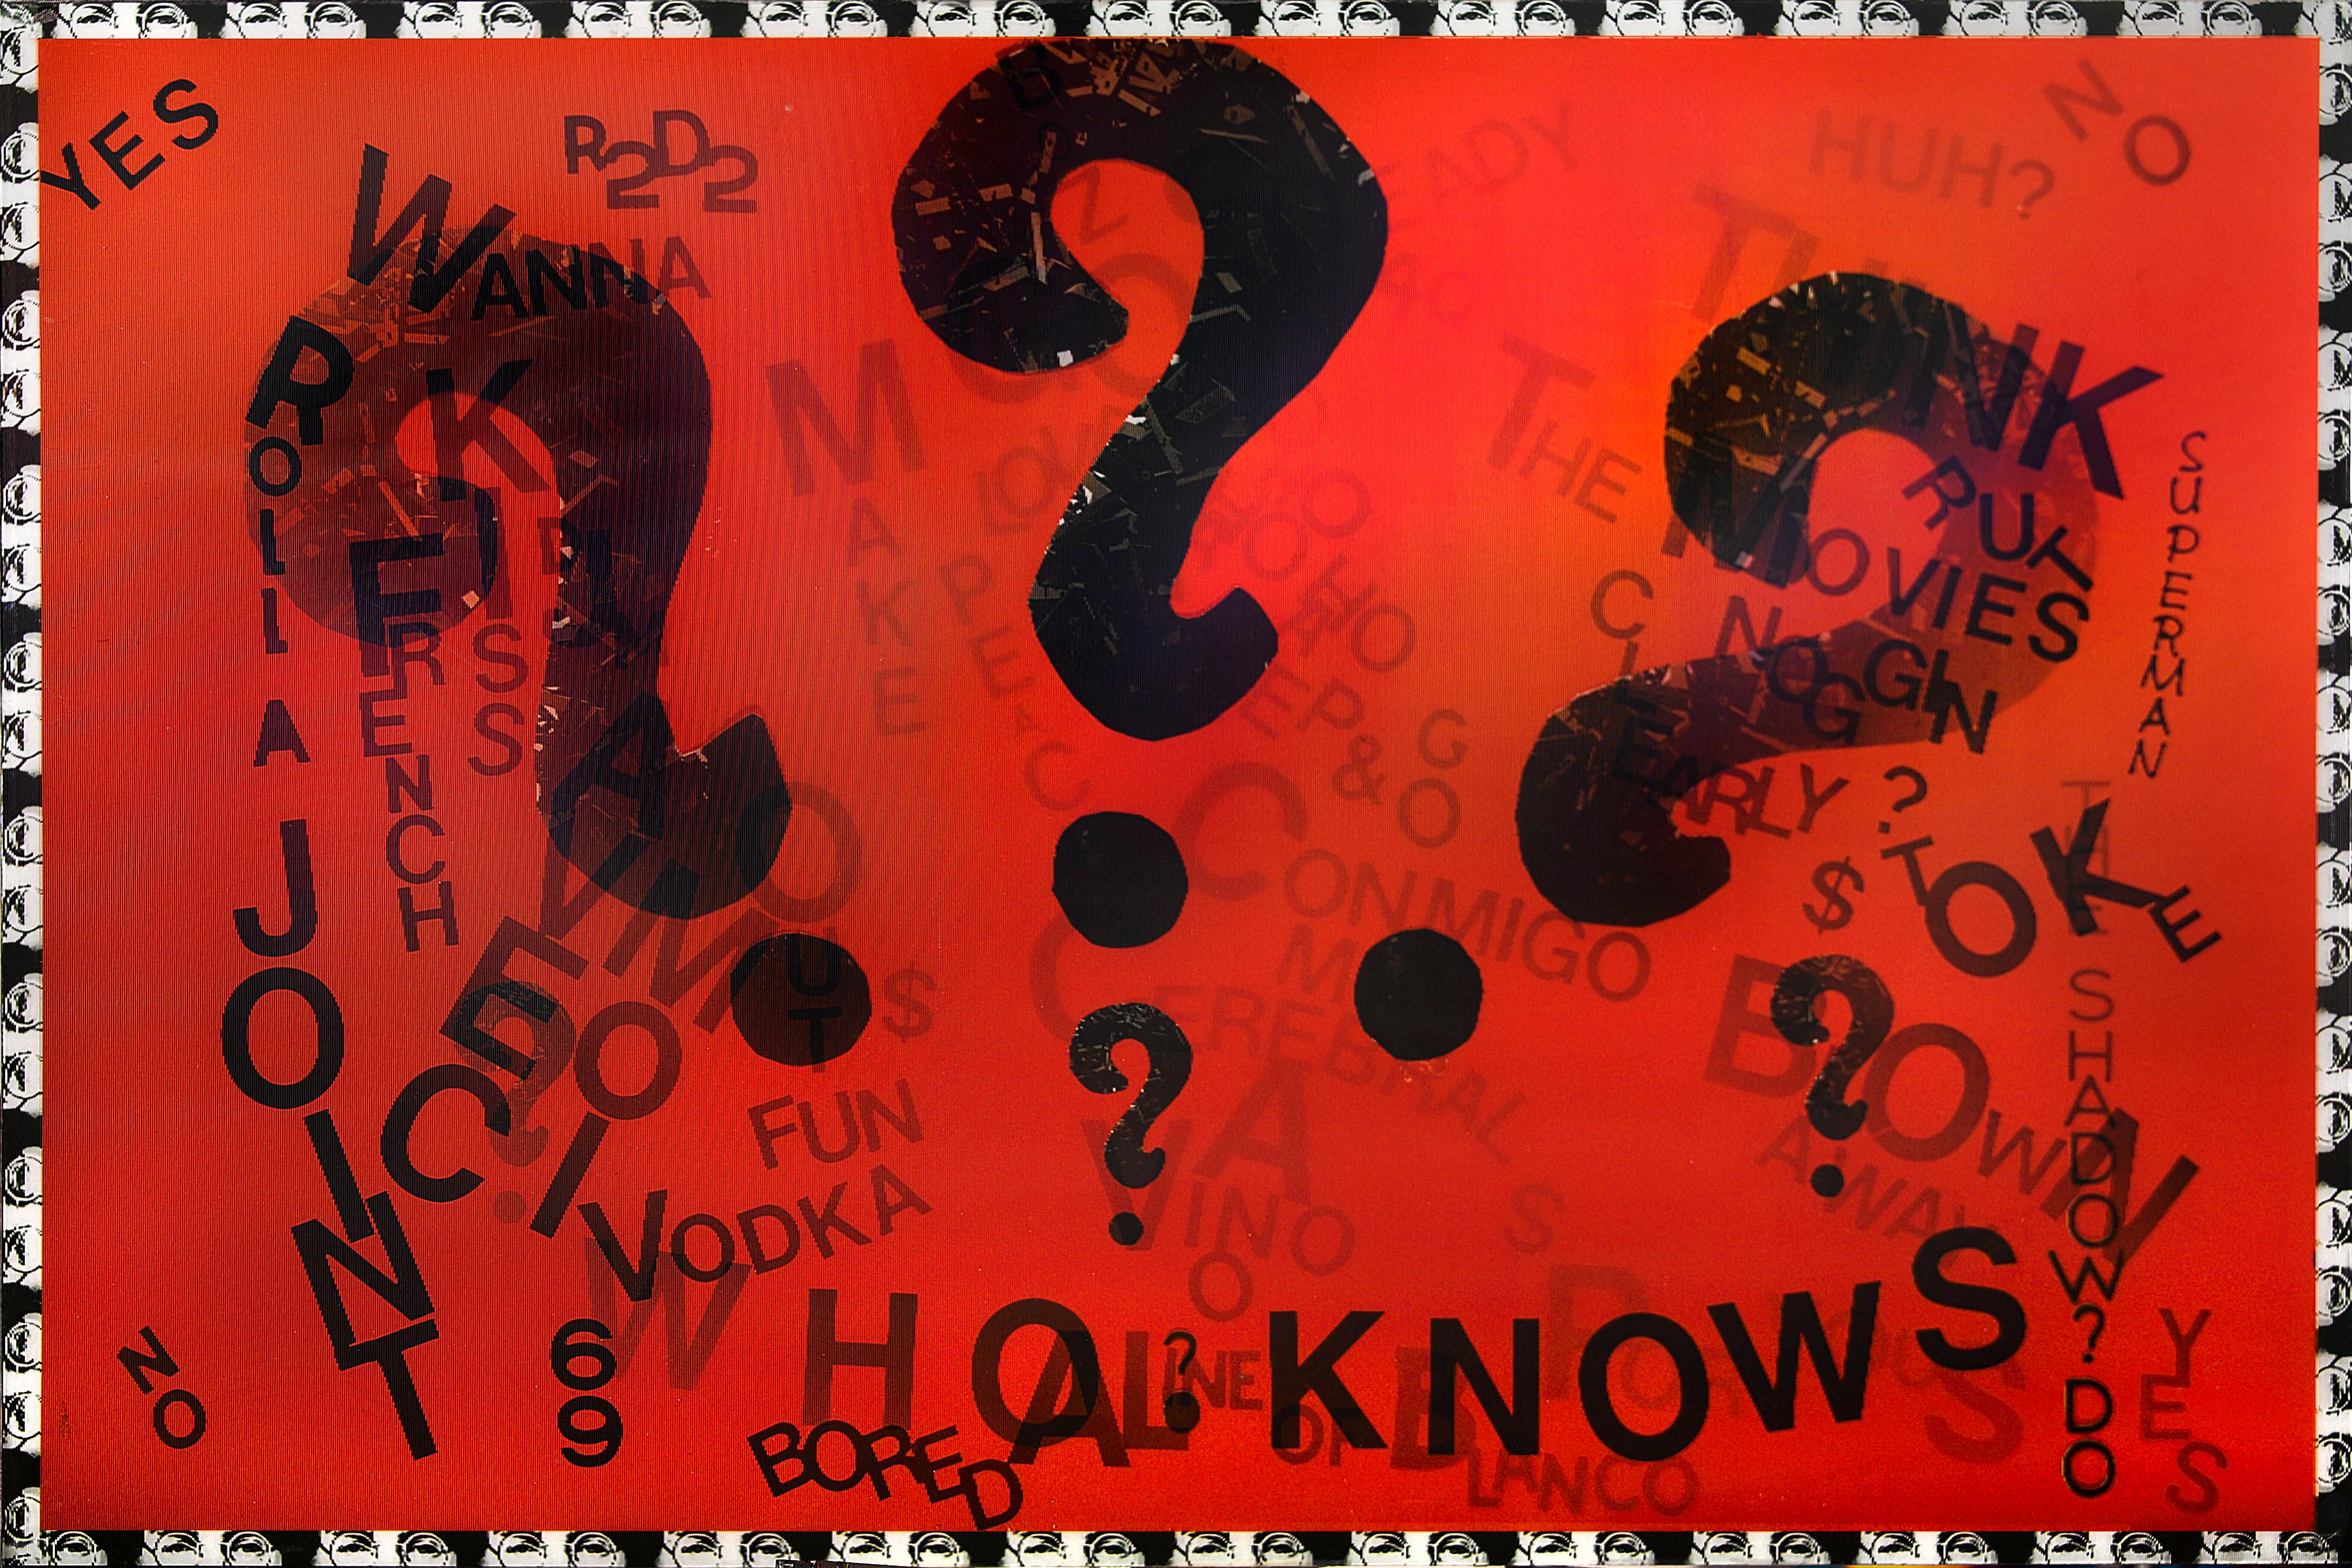 "Who Knows" von DJ Leon, 2013. Das Werk misst 36 x 24 Zoll. Dieser Lentikulardruck enthält unzusammenhängende Wörter und Phrasen vor einem orange-roten Hintergrund und regt zum freien Fluss des Bewusstseins an. Wenn sich der Betrachter von einer